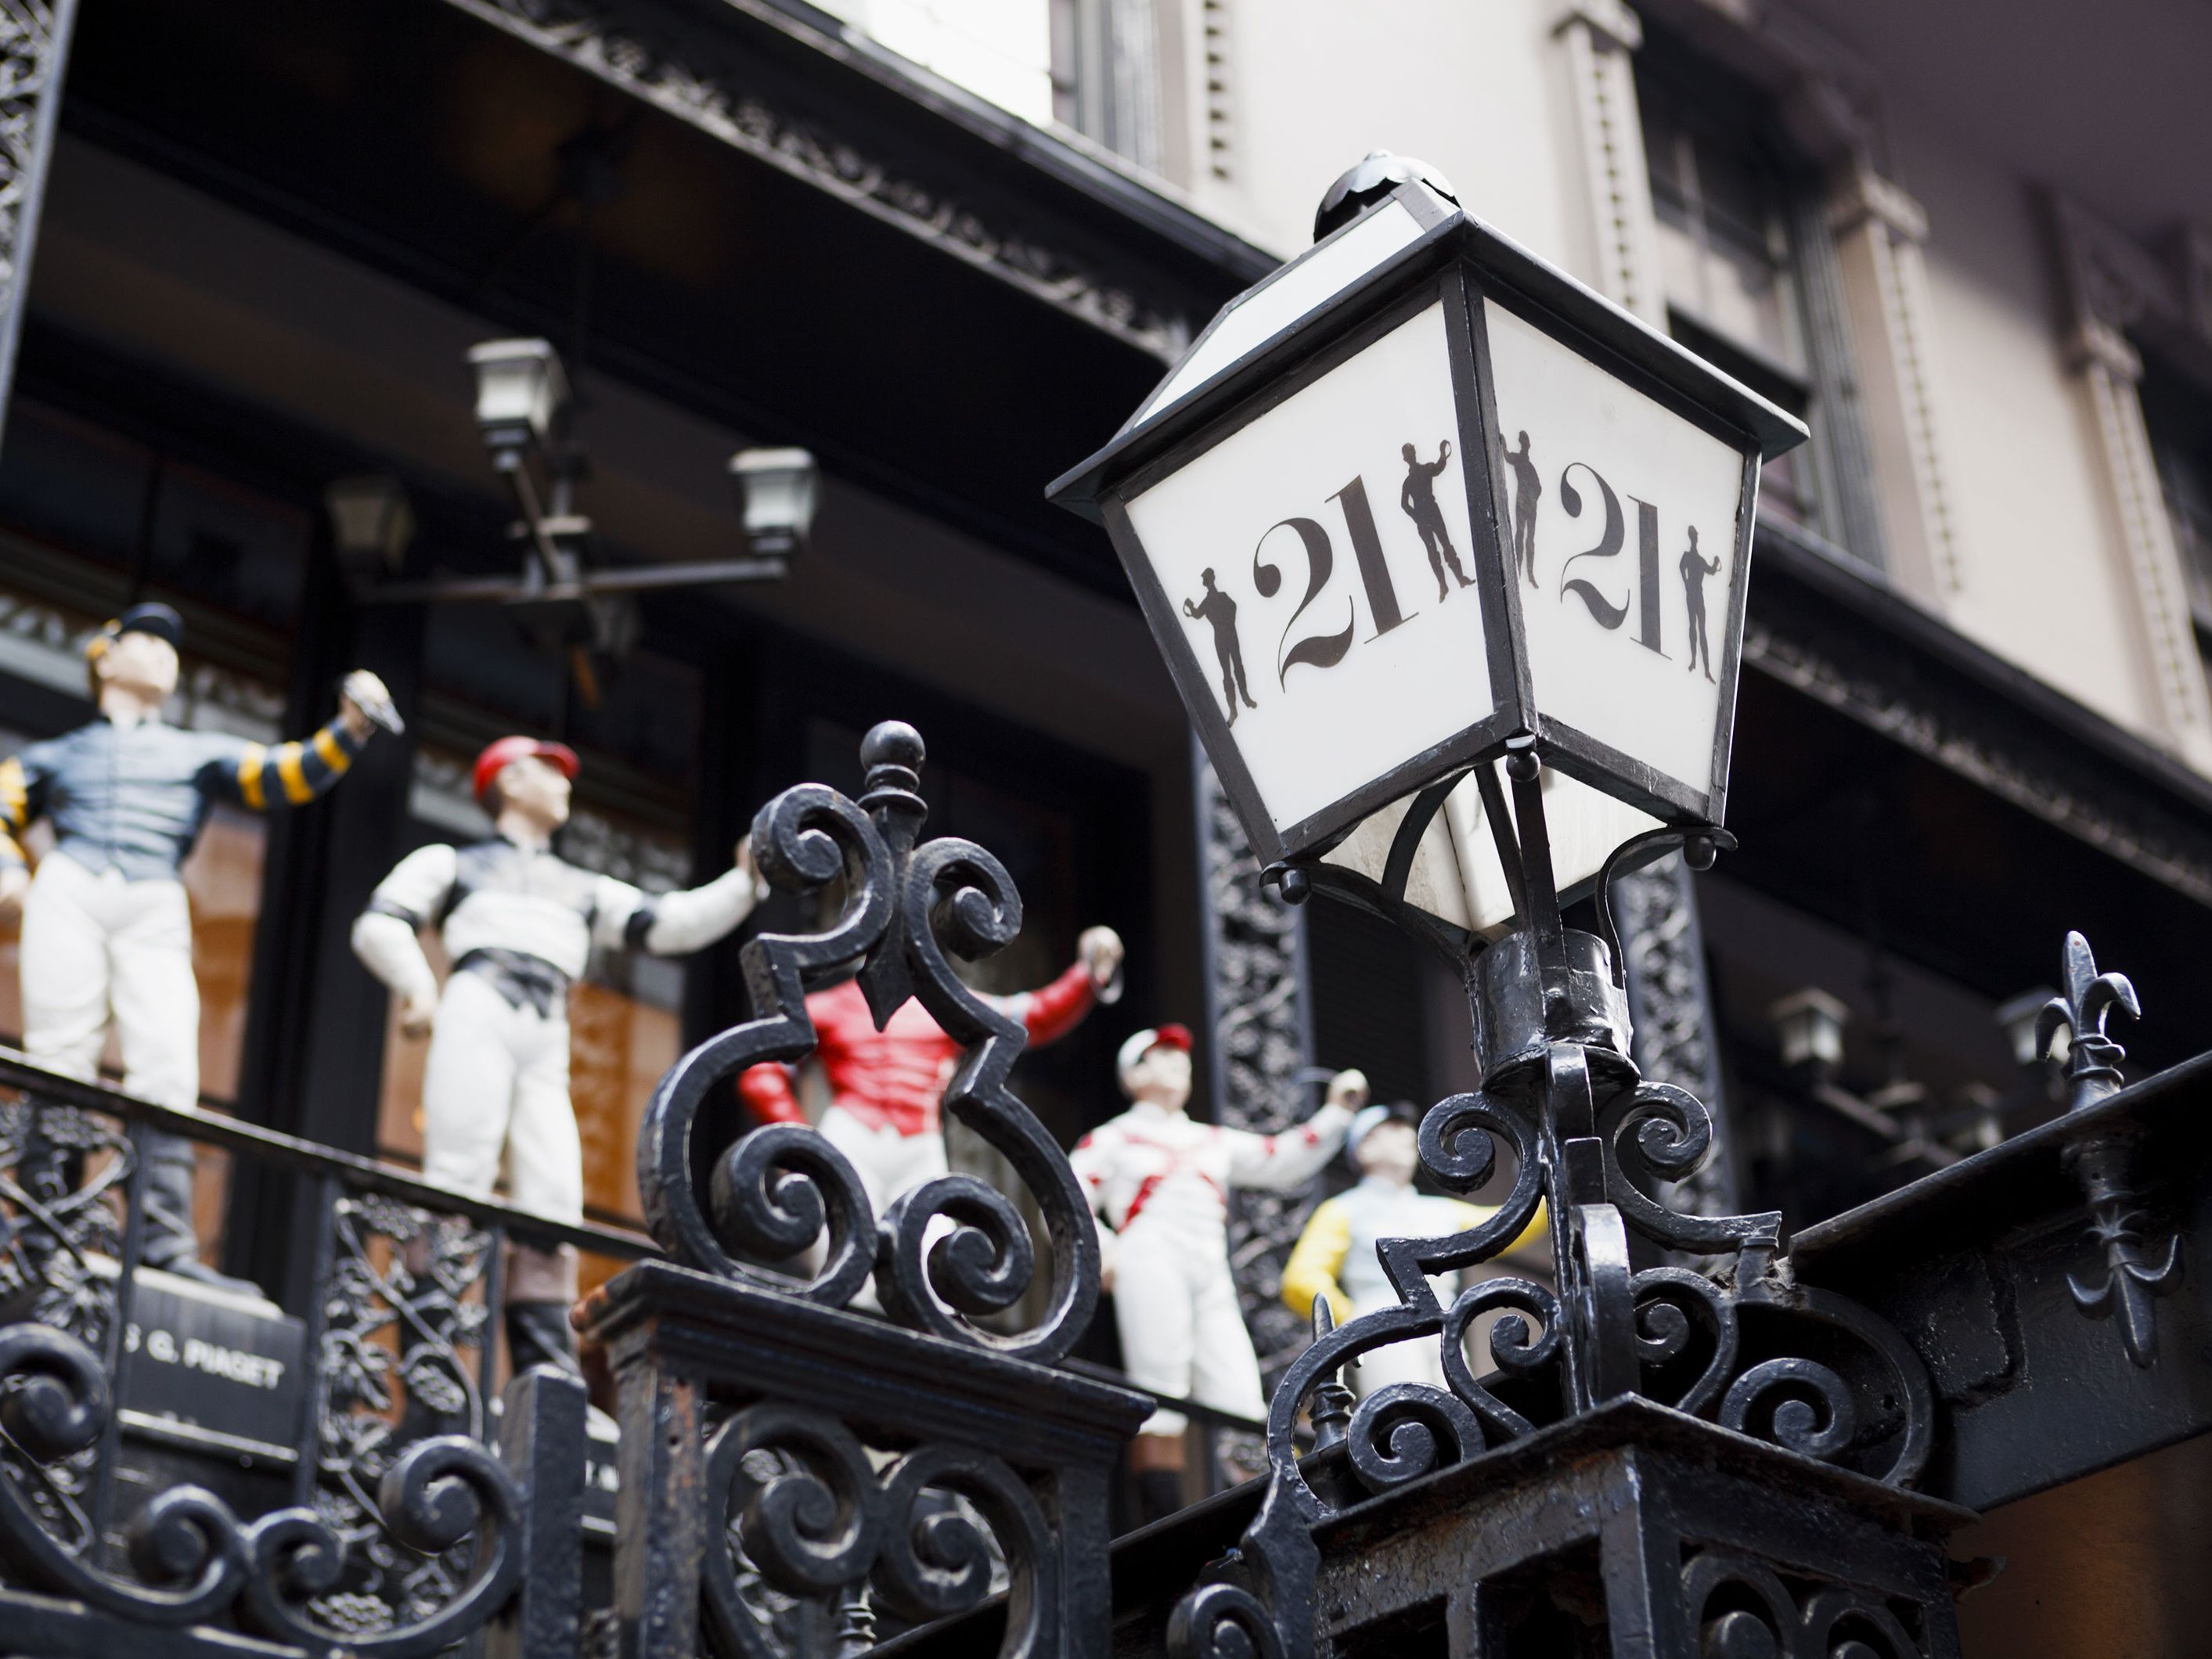 21 Club restaurant in NYC is closing down | CNN